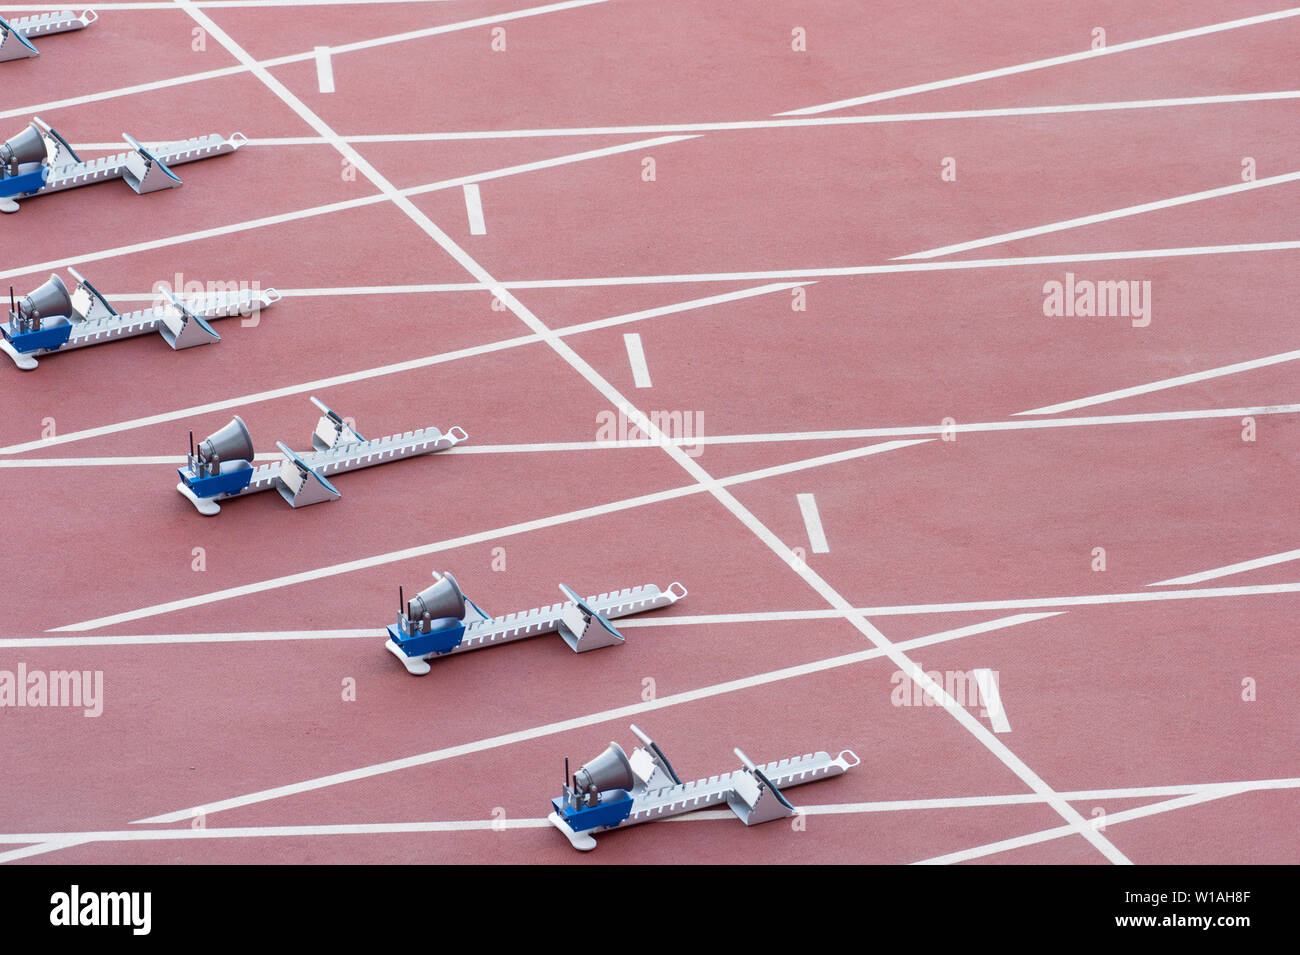 Athletische start Block auf dunklen roten Tartanbahn Stockfoto